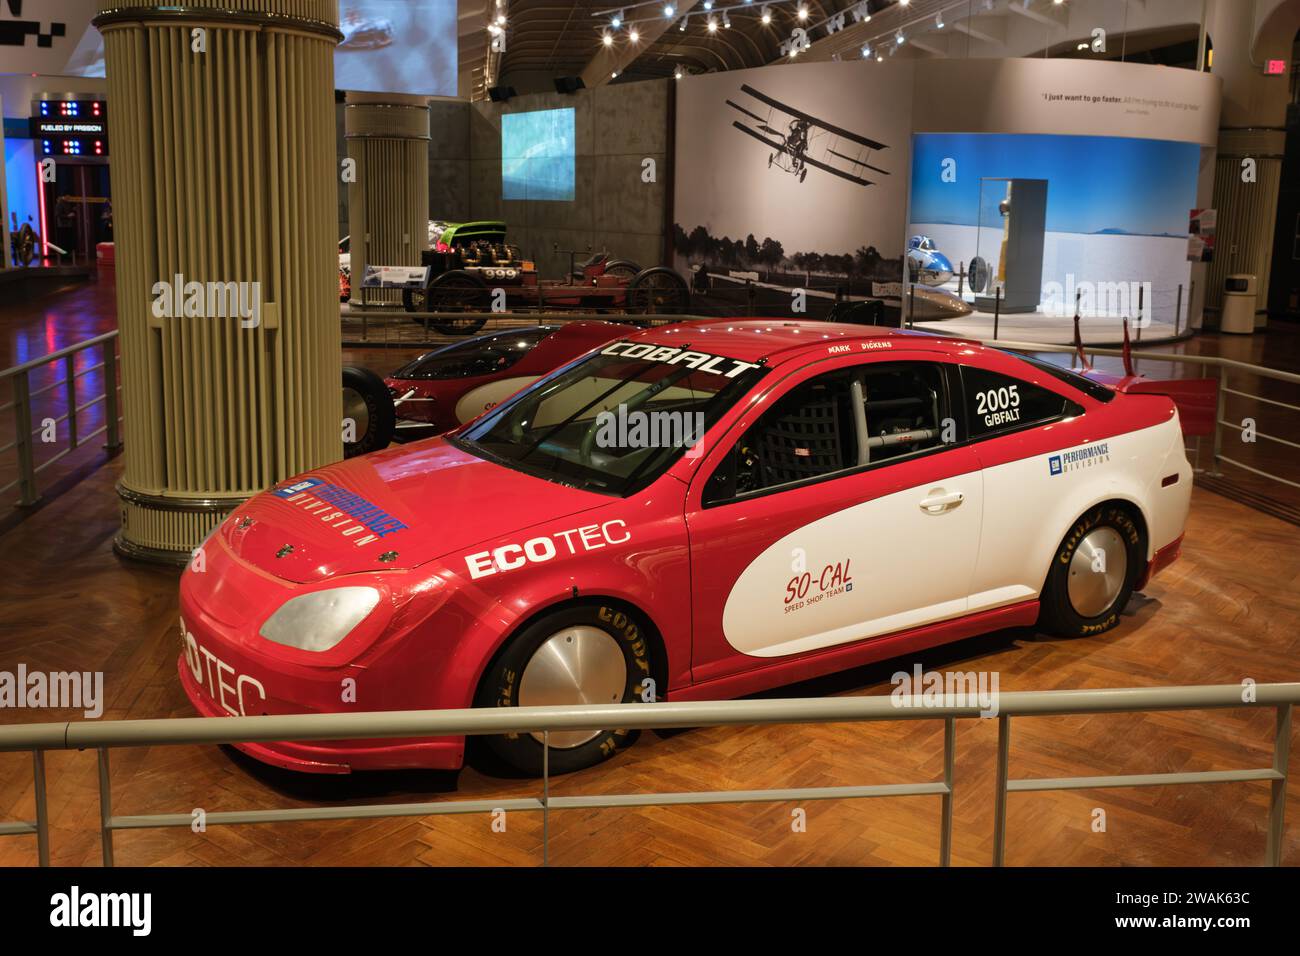 La voiture de vitesse terrestre Cobalt SS 2004 de Chevrolet exposée au Henry Ford Museum of American innovation, Dearborn Michigan, États-Unis Banque D'Images